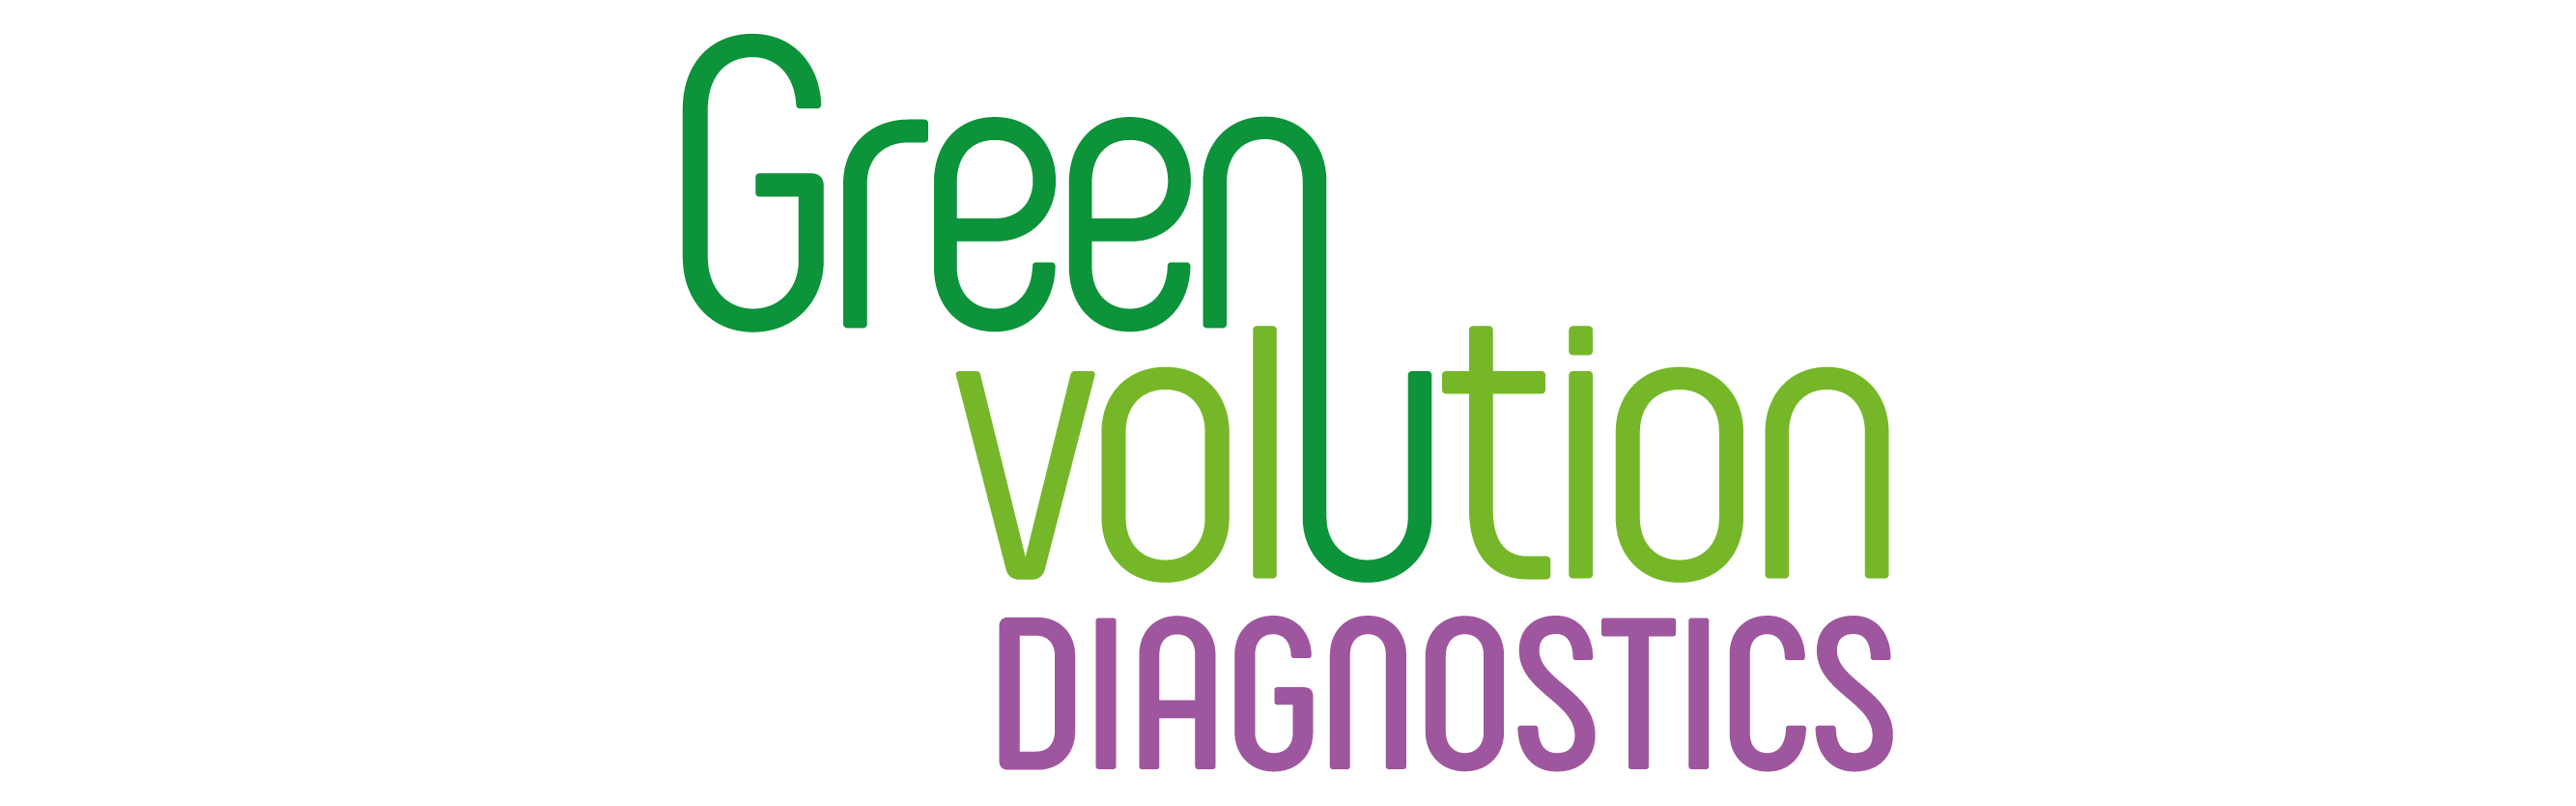 logo greenvolution web_Mesa de trabajo 1